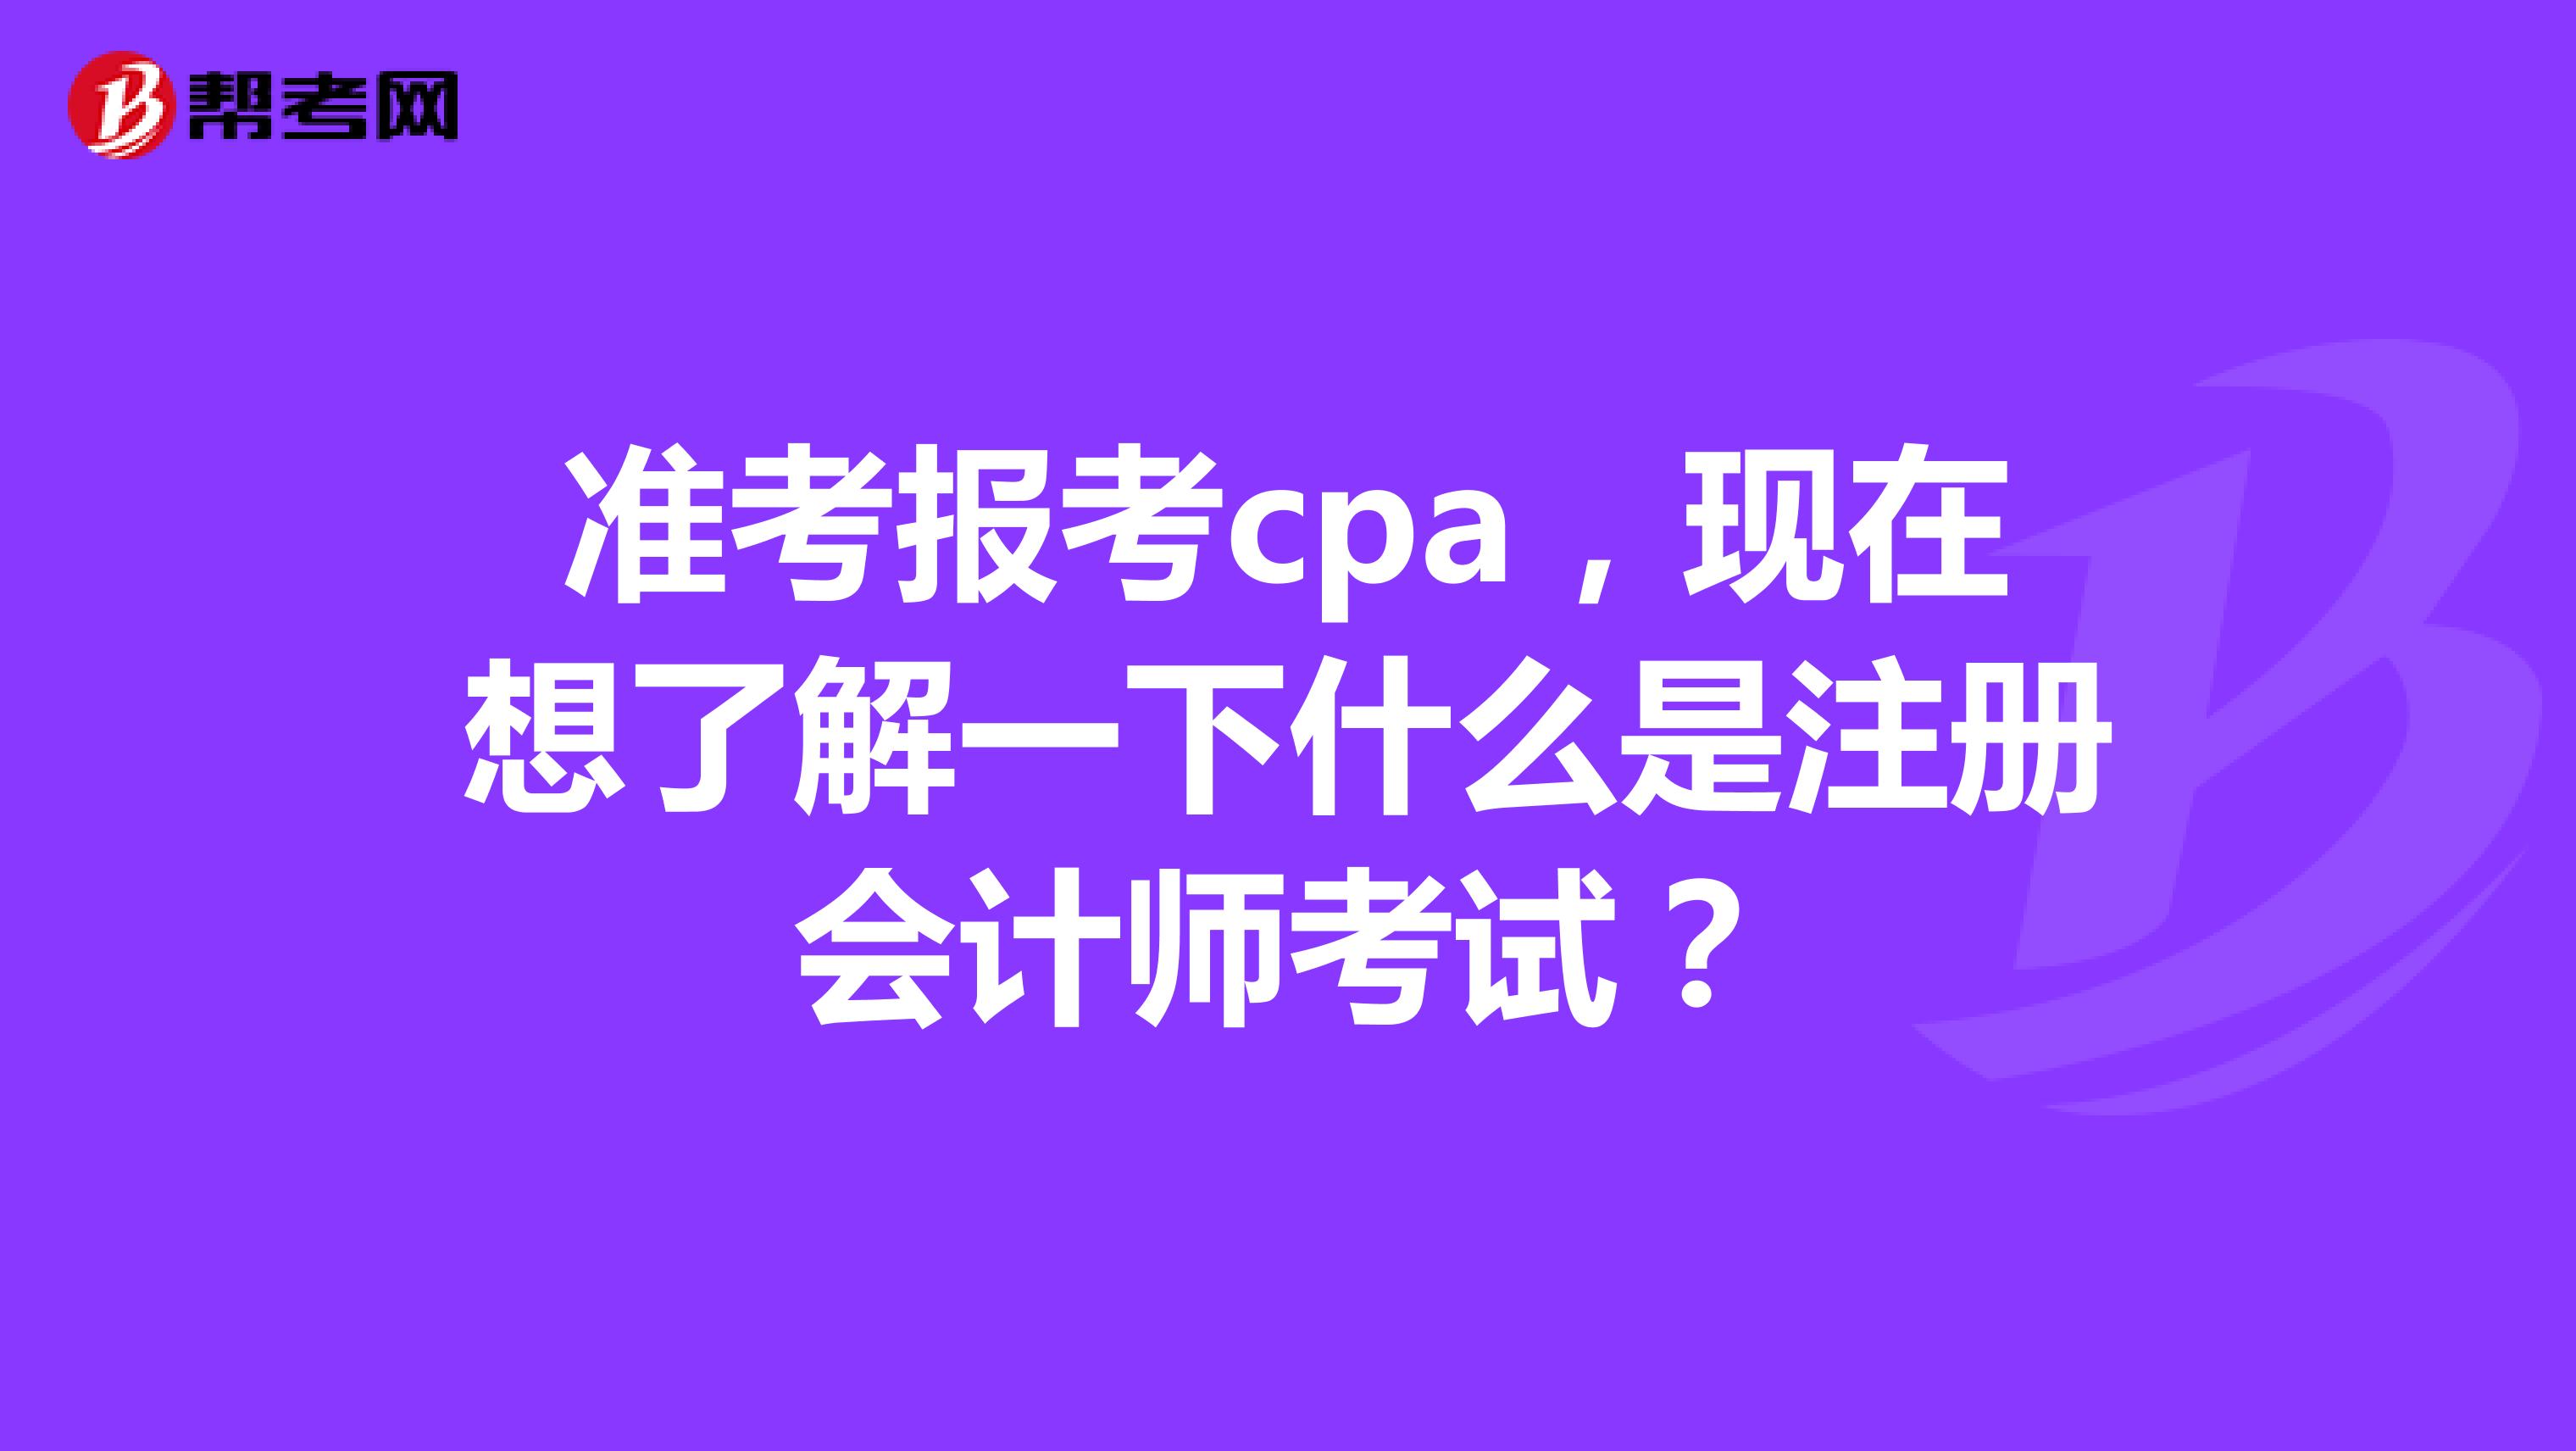 准考报考cpa，现在想了解一下什么是注册会计师考试？